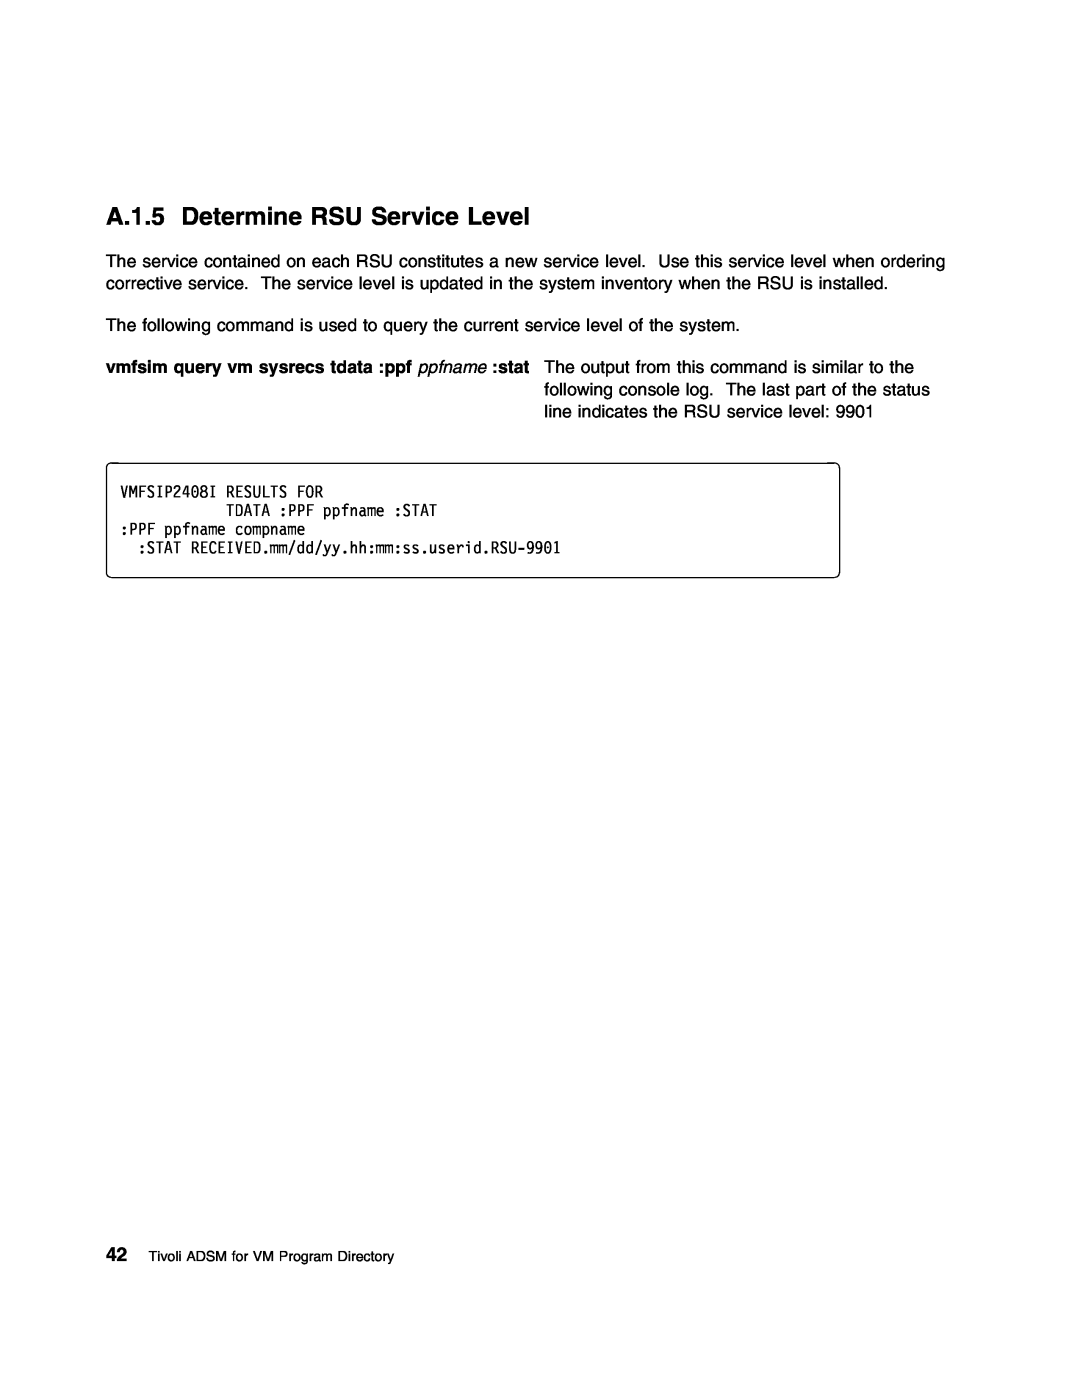 IBM 5697-VM3 manual A.1.5 Determine RSU Service Level, VMFSIP24 TDATA PPF ppfname STAT PPF ppfname compname 